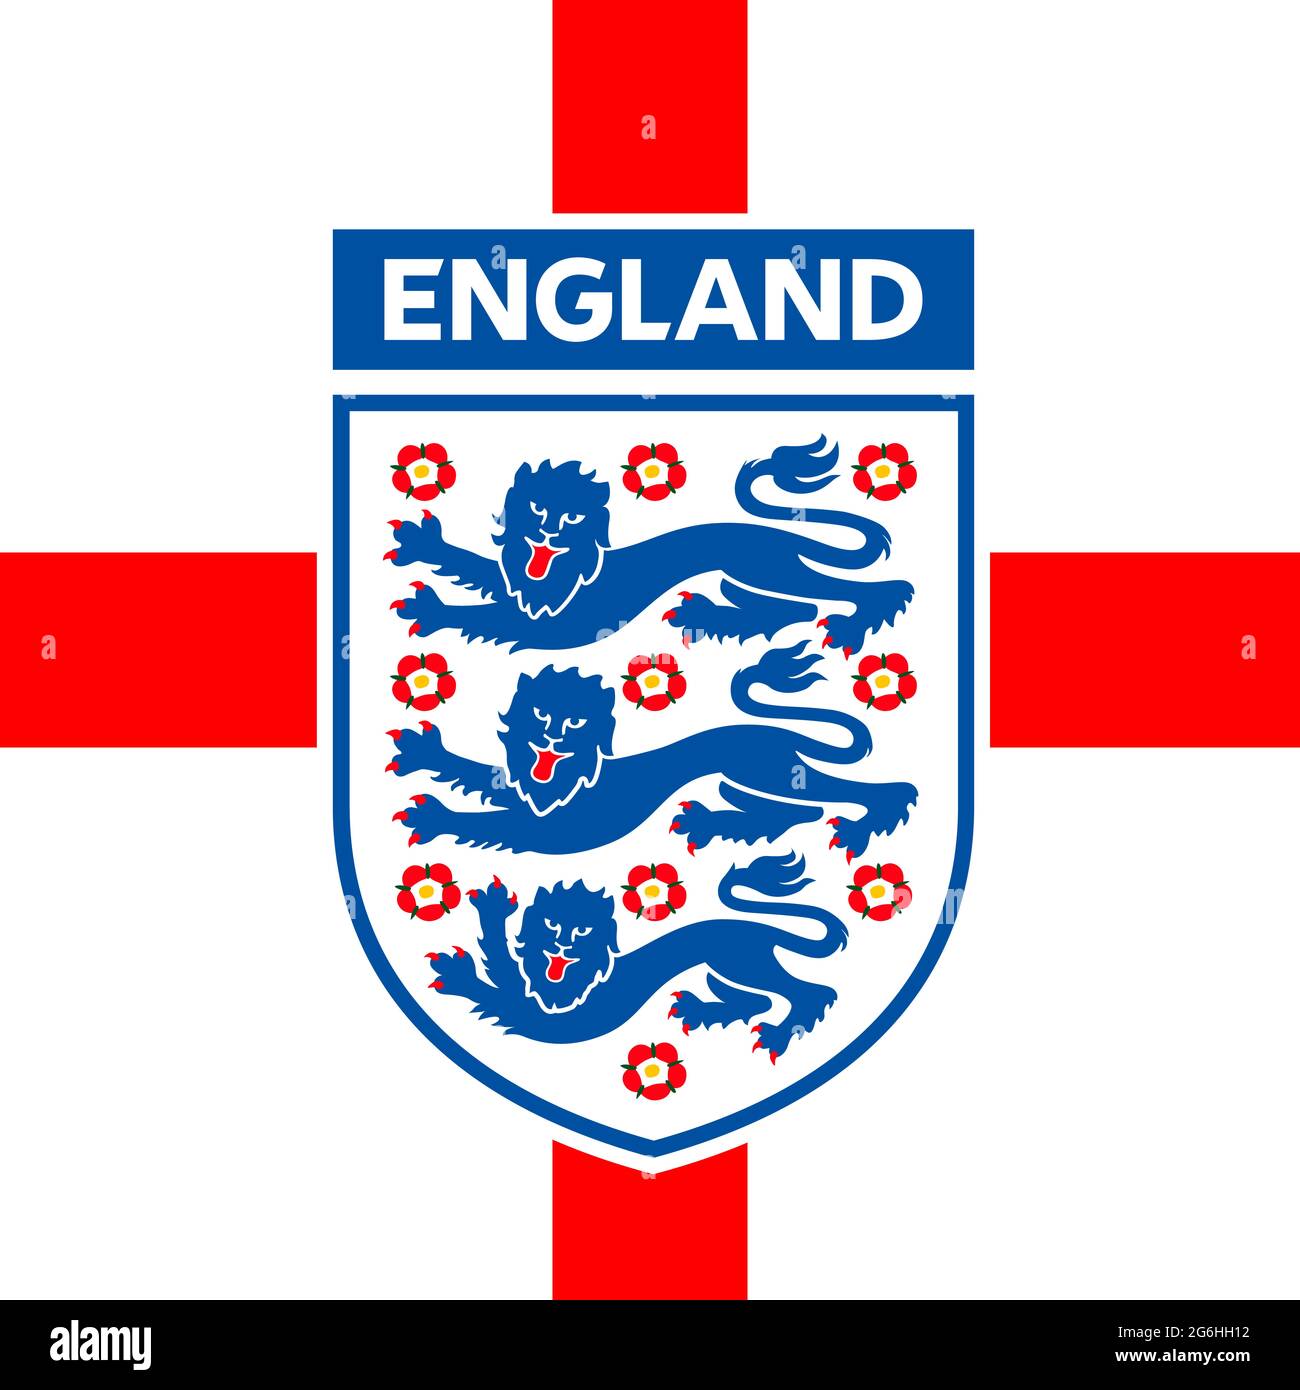 LONDRES, ANGLETERRE, juin 2021 - drapeau anglais avec logo de la fédération nationale de football pour le championnat européen 2021 Banque D'Images